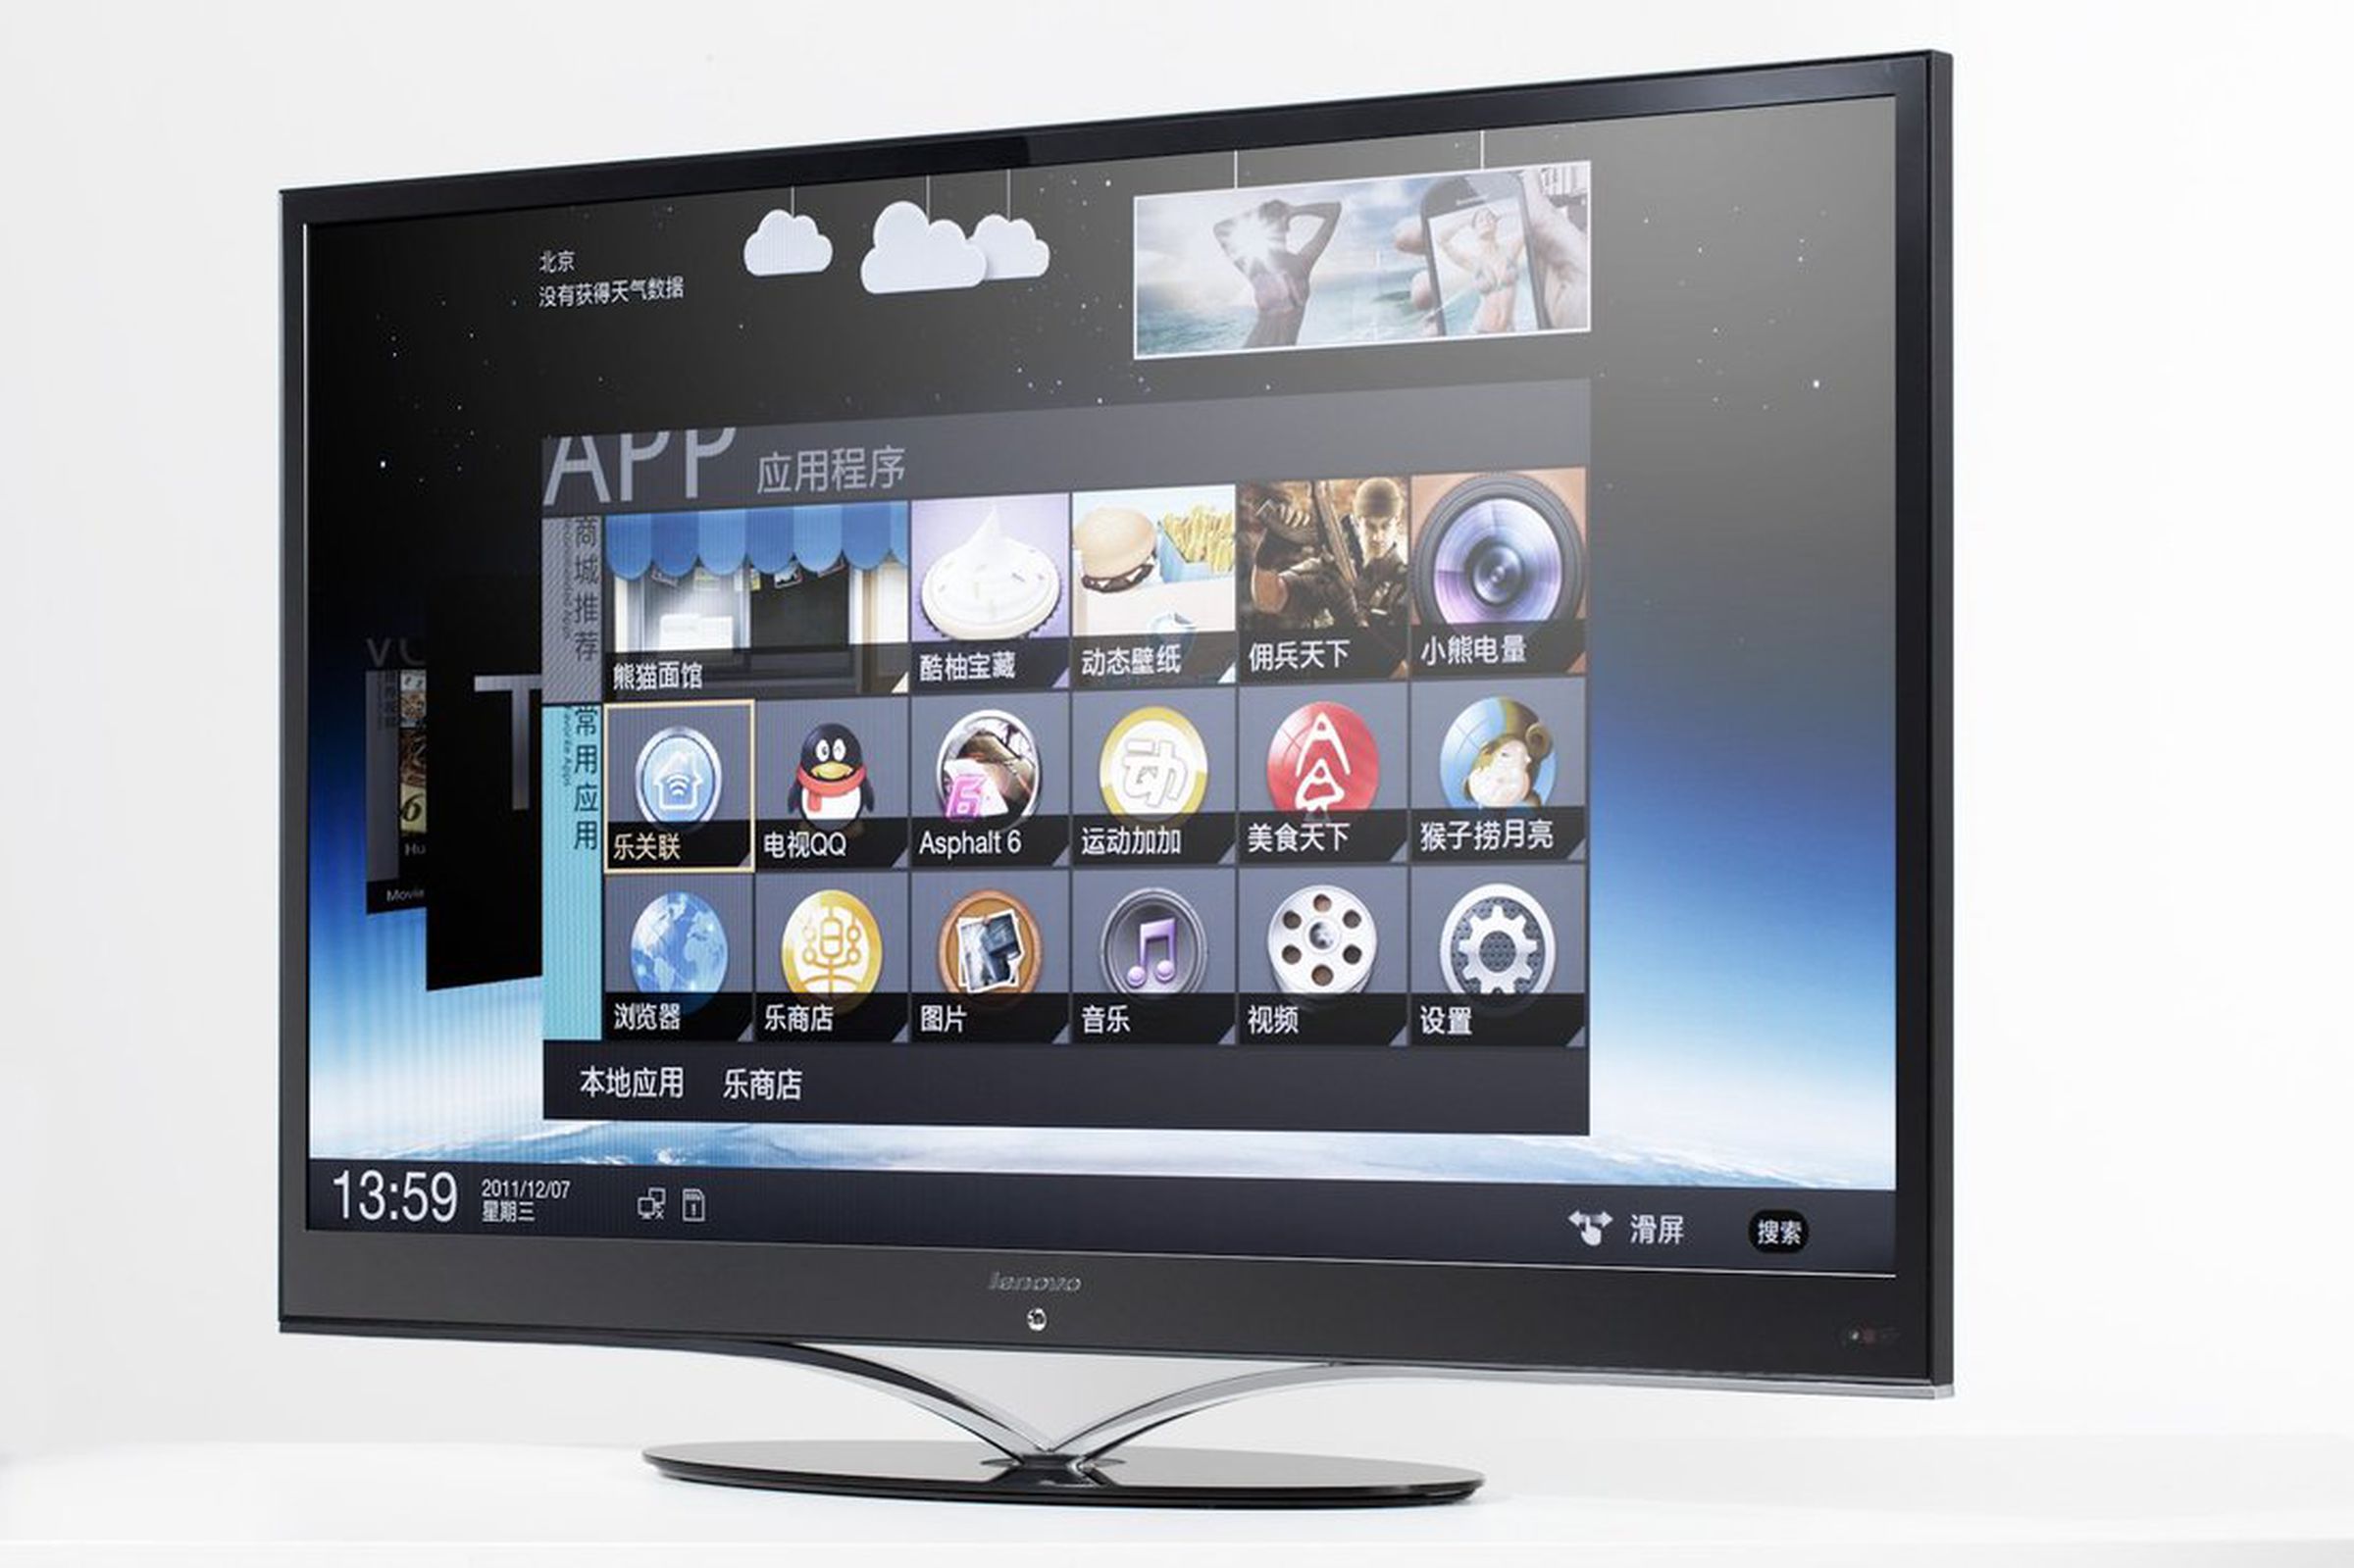 Lenovo K91 Smart TV gallery